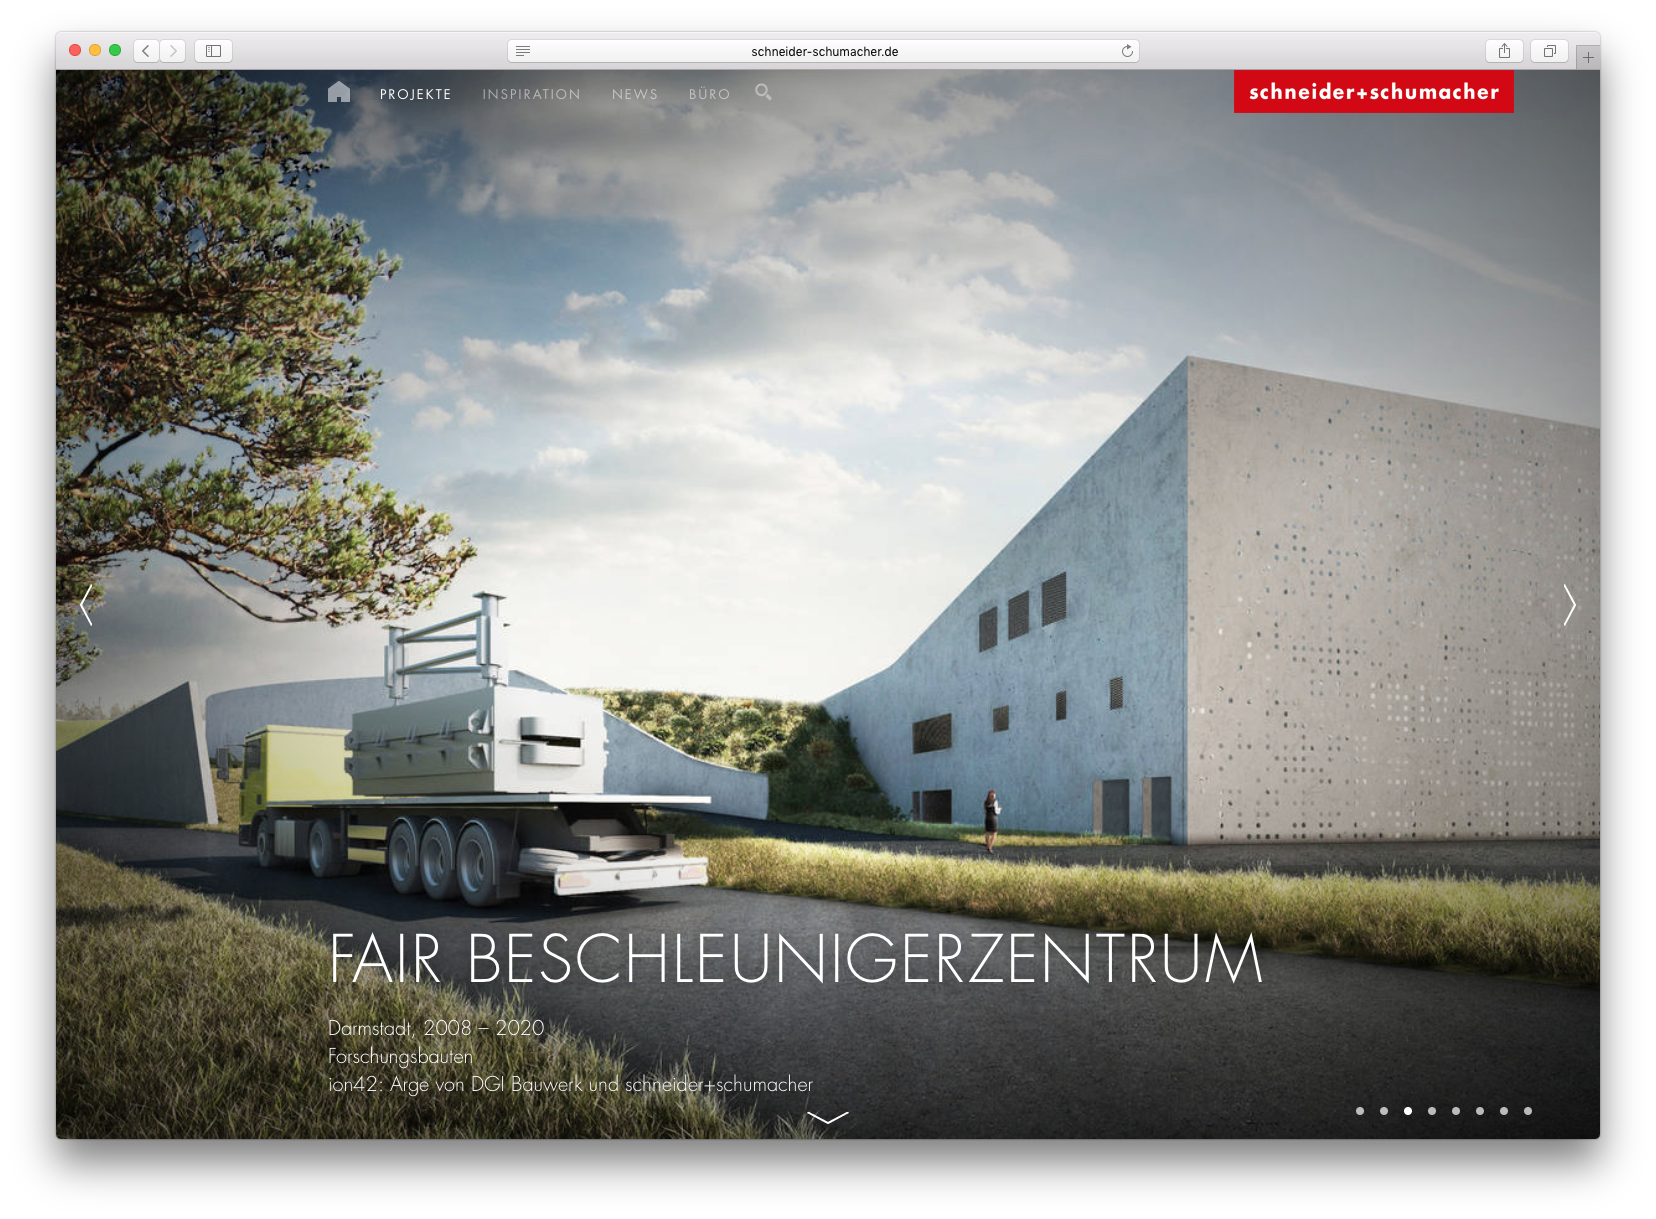 webdesign frankfurt / screendesign schneider+schumacher